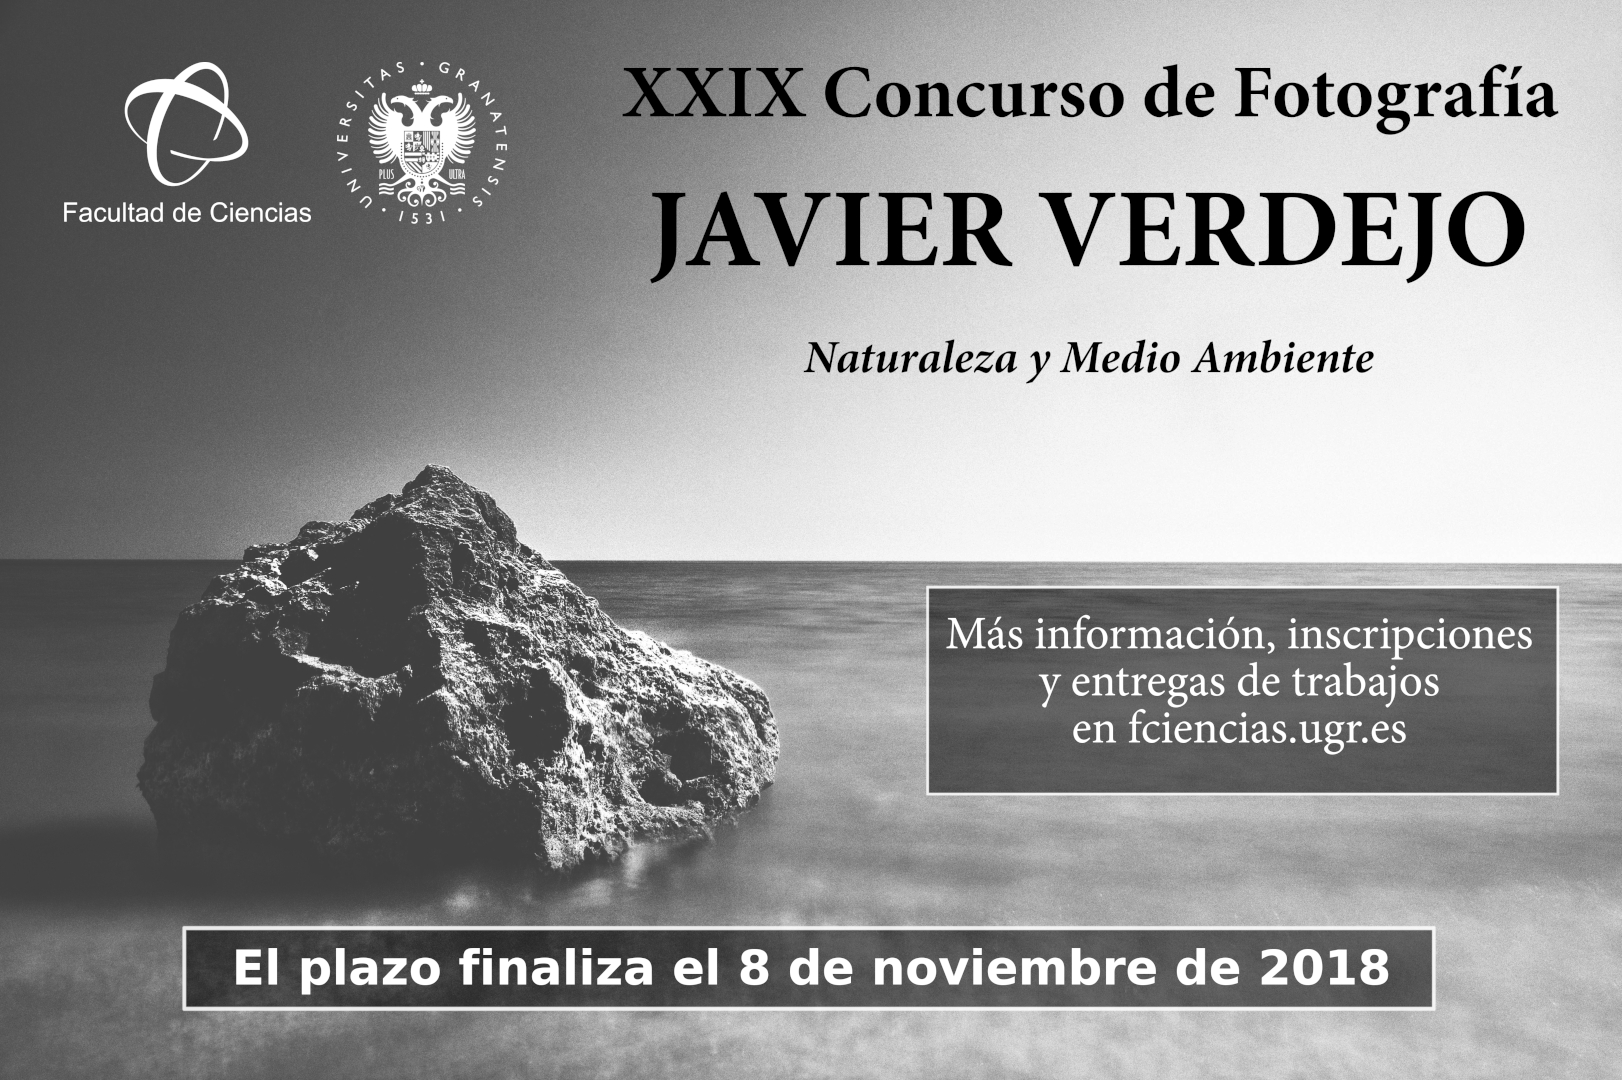 XXIX Concurso de Fotografía Javier Verdejo